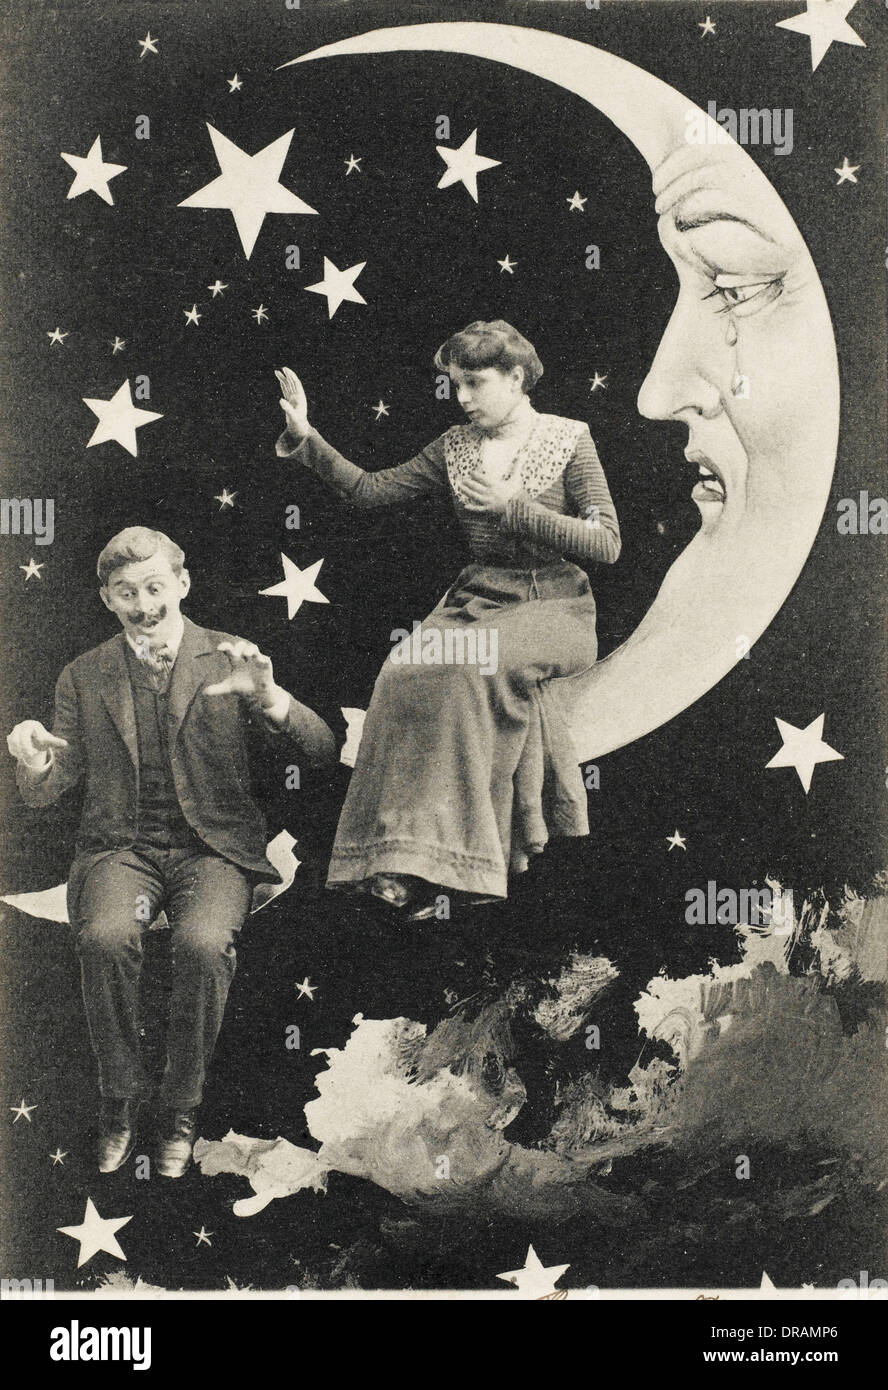 Paper moon woman immagini e fotografie stock ad alta risoluzione - Alamy